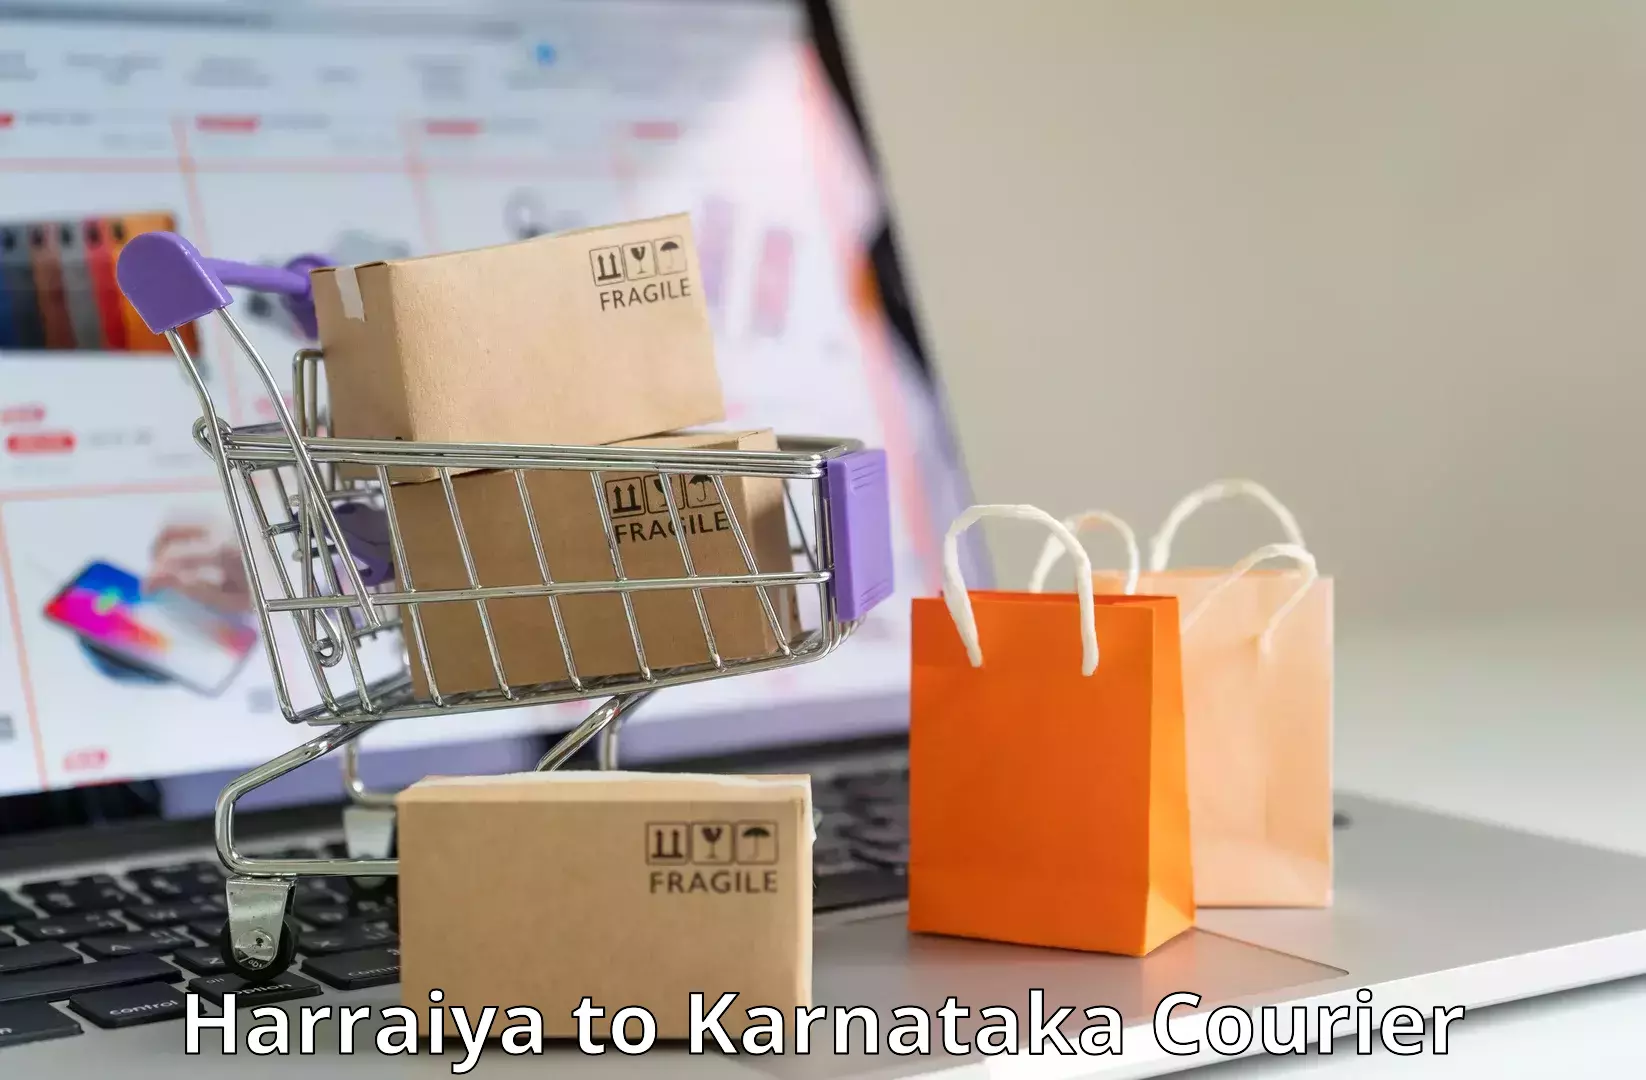 Package tracking Harraiya to Kotturu